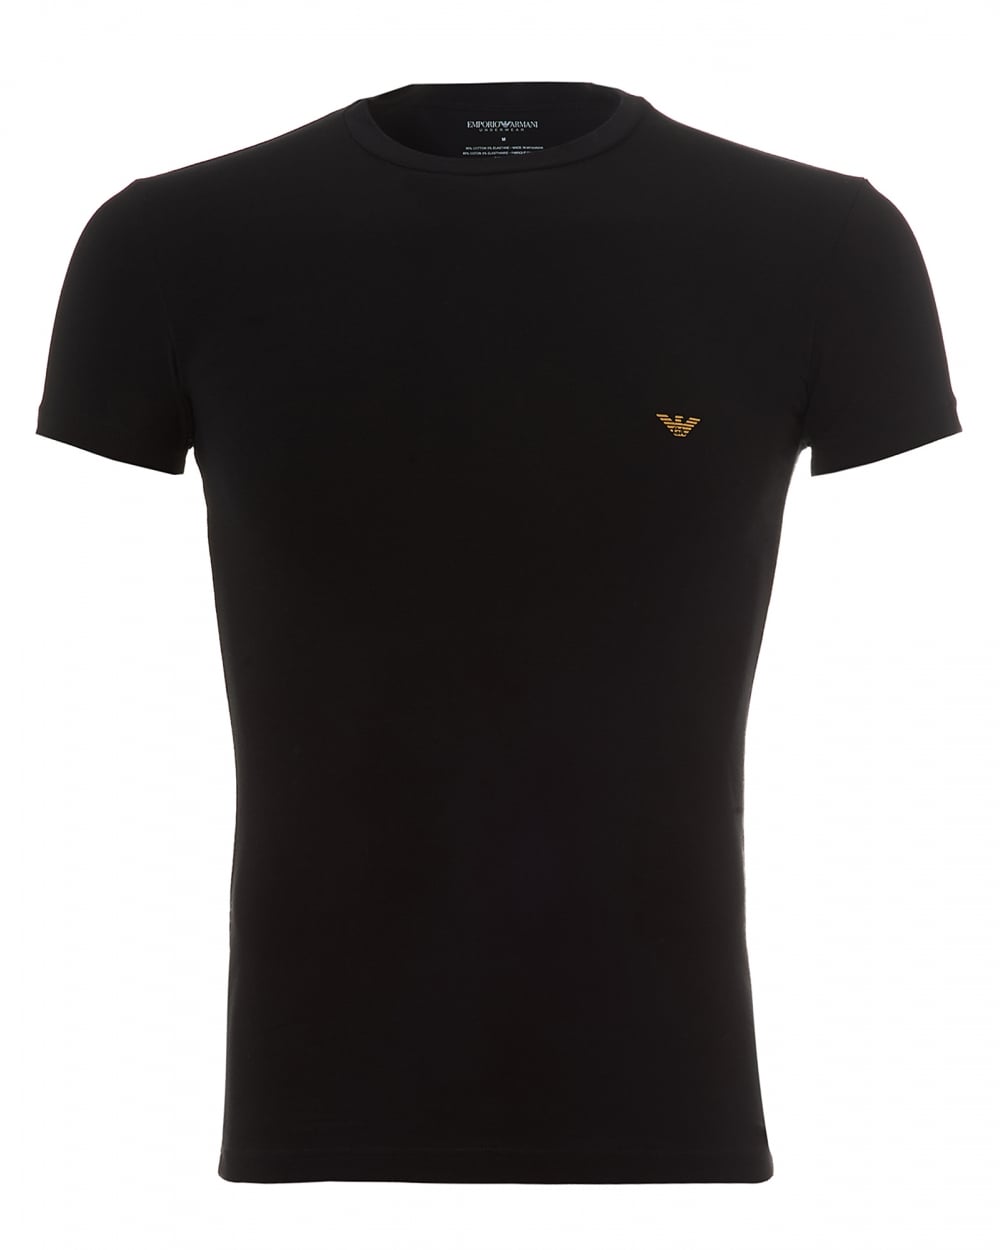 Armani T shirts mens metal eagle t-shirt, large back logo black tee TLRHUDL